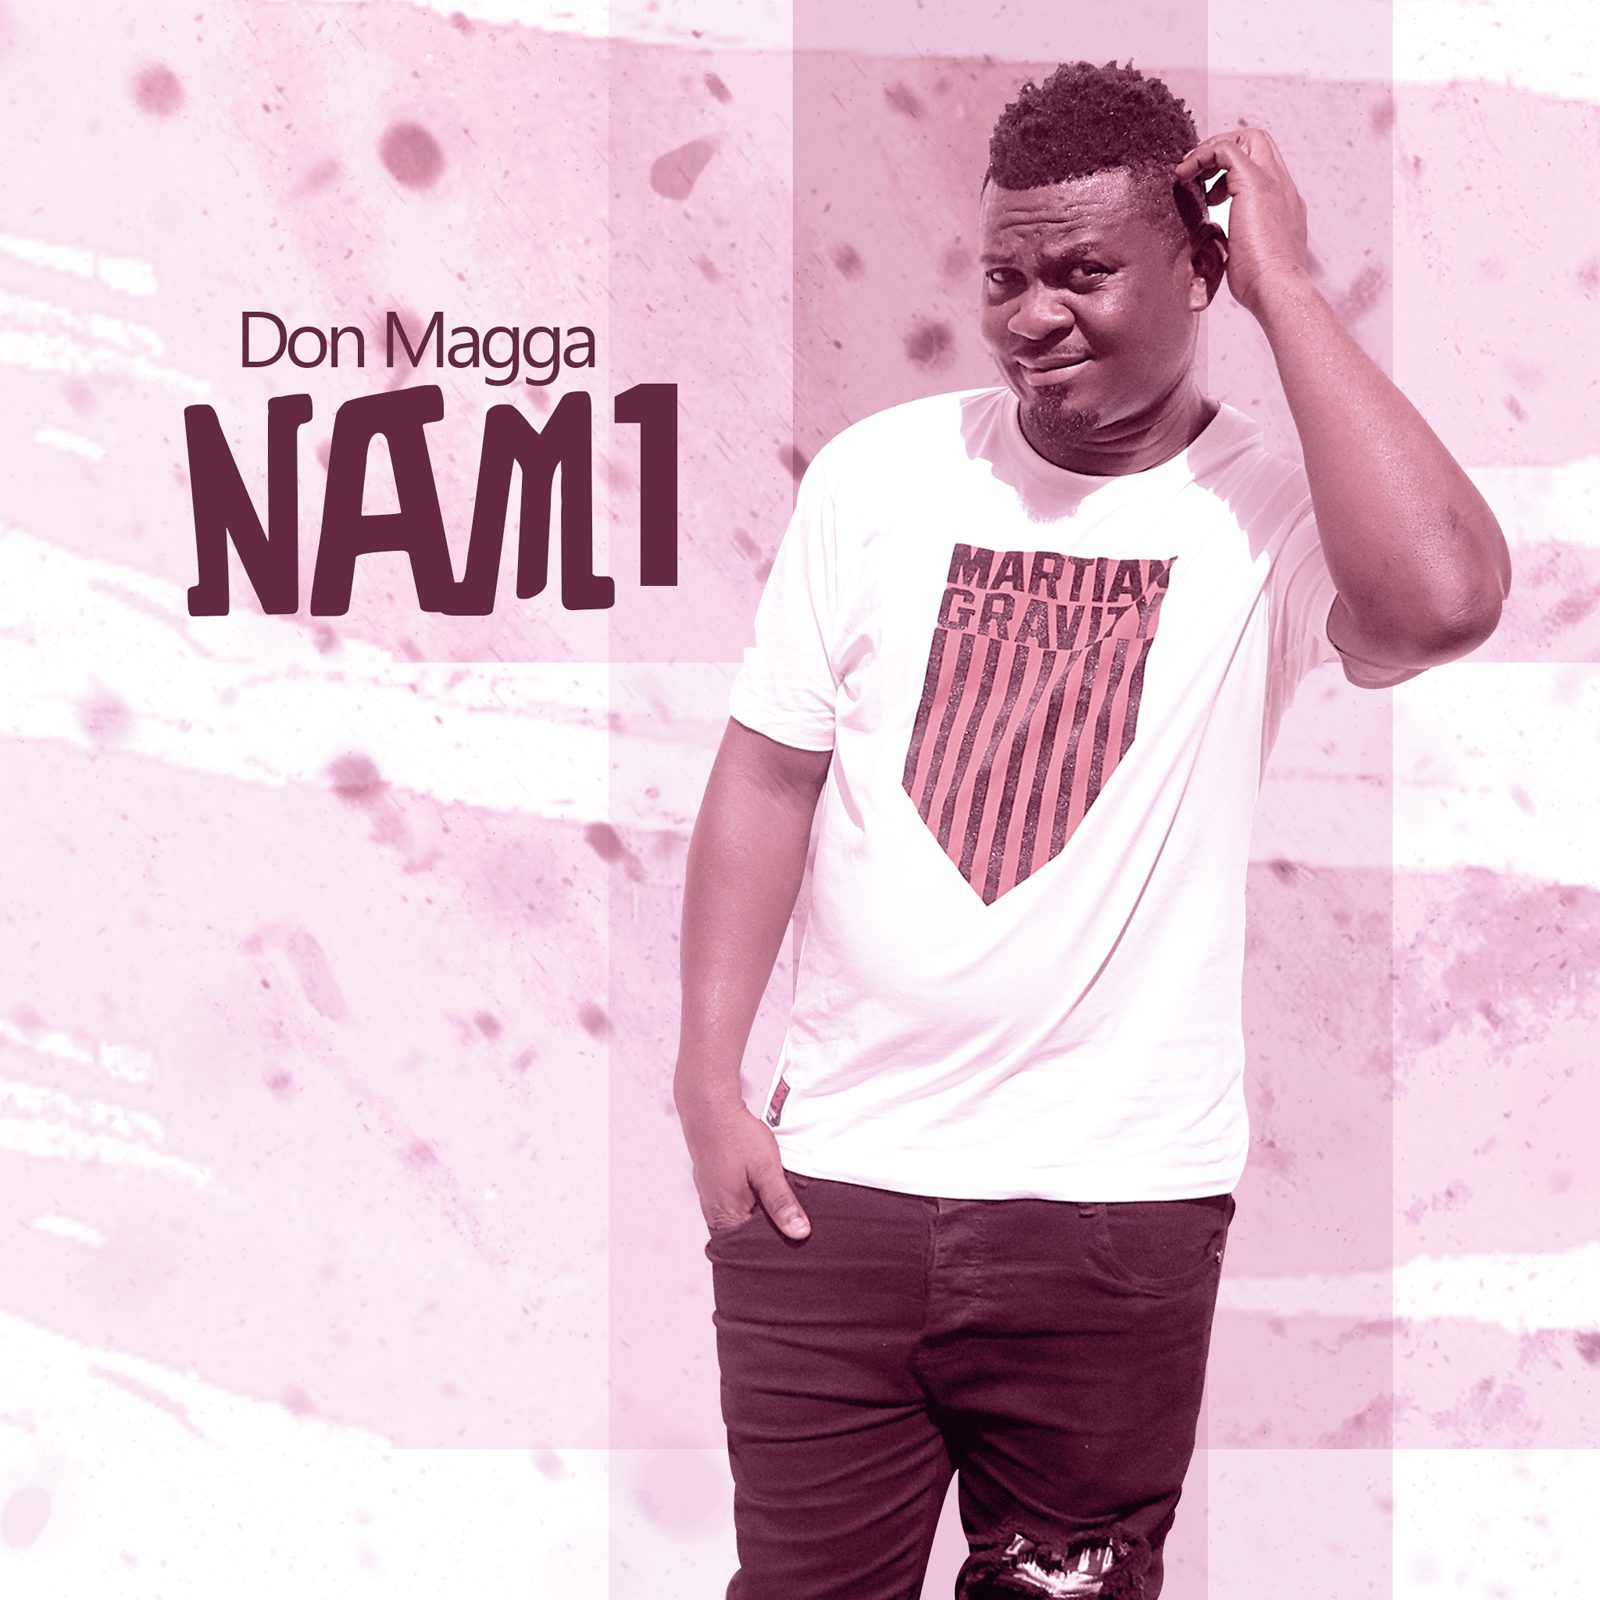 Audio + Lyrics Video: Don Magga – Nam 1